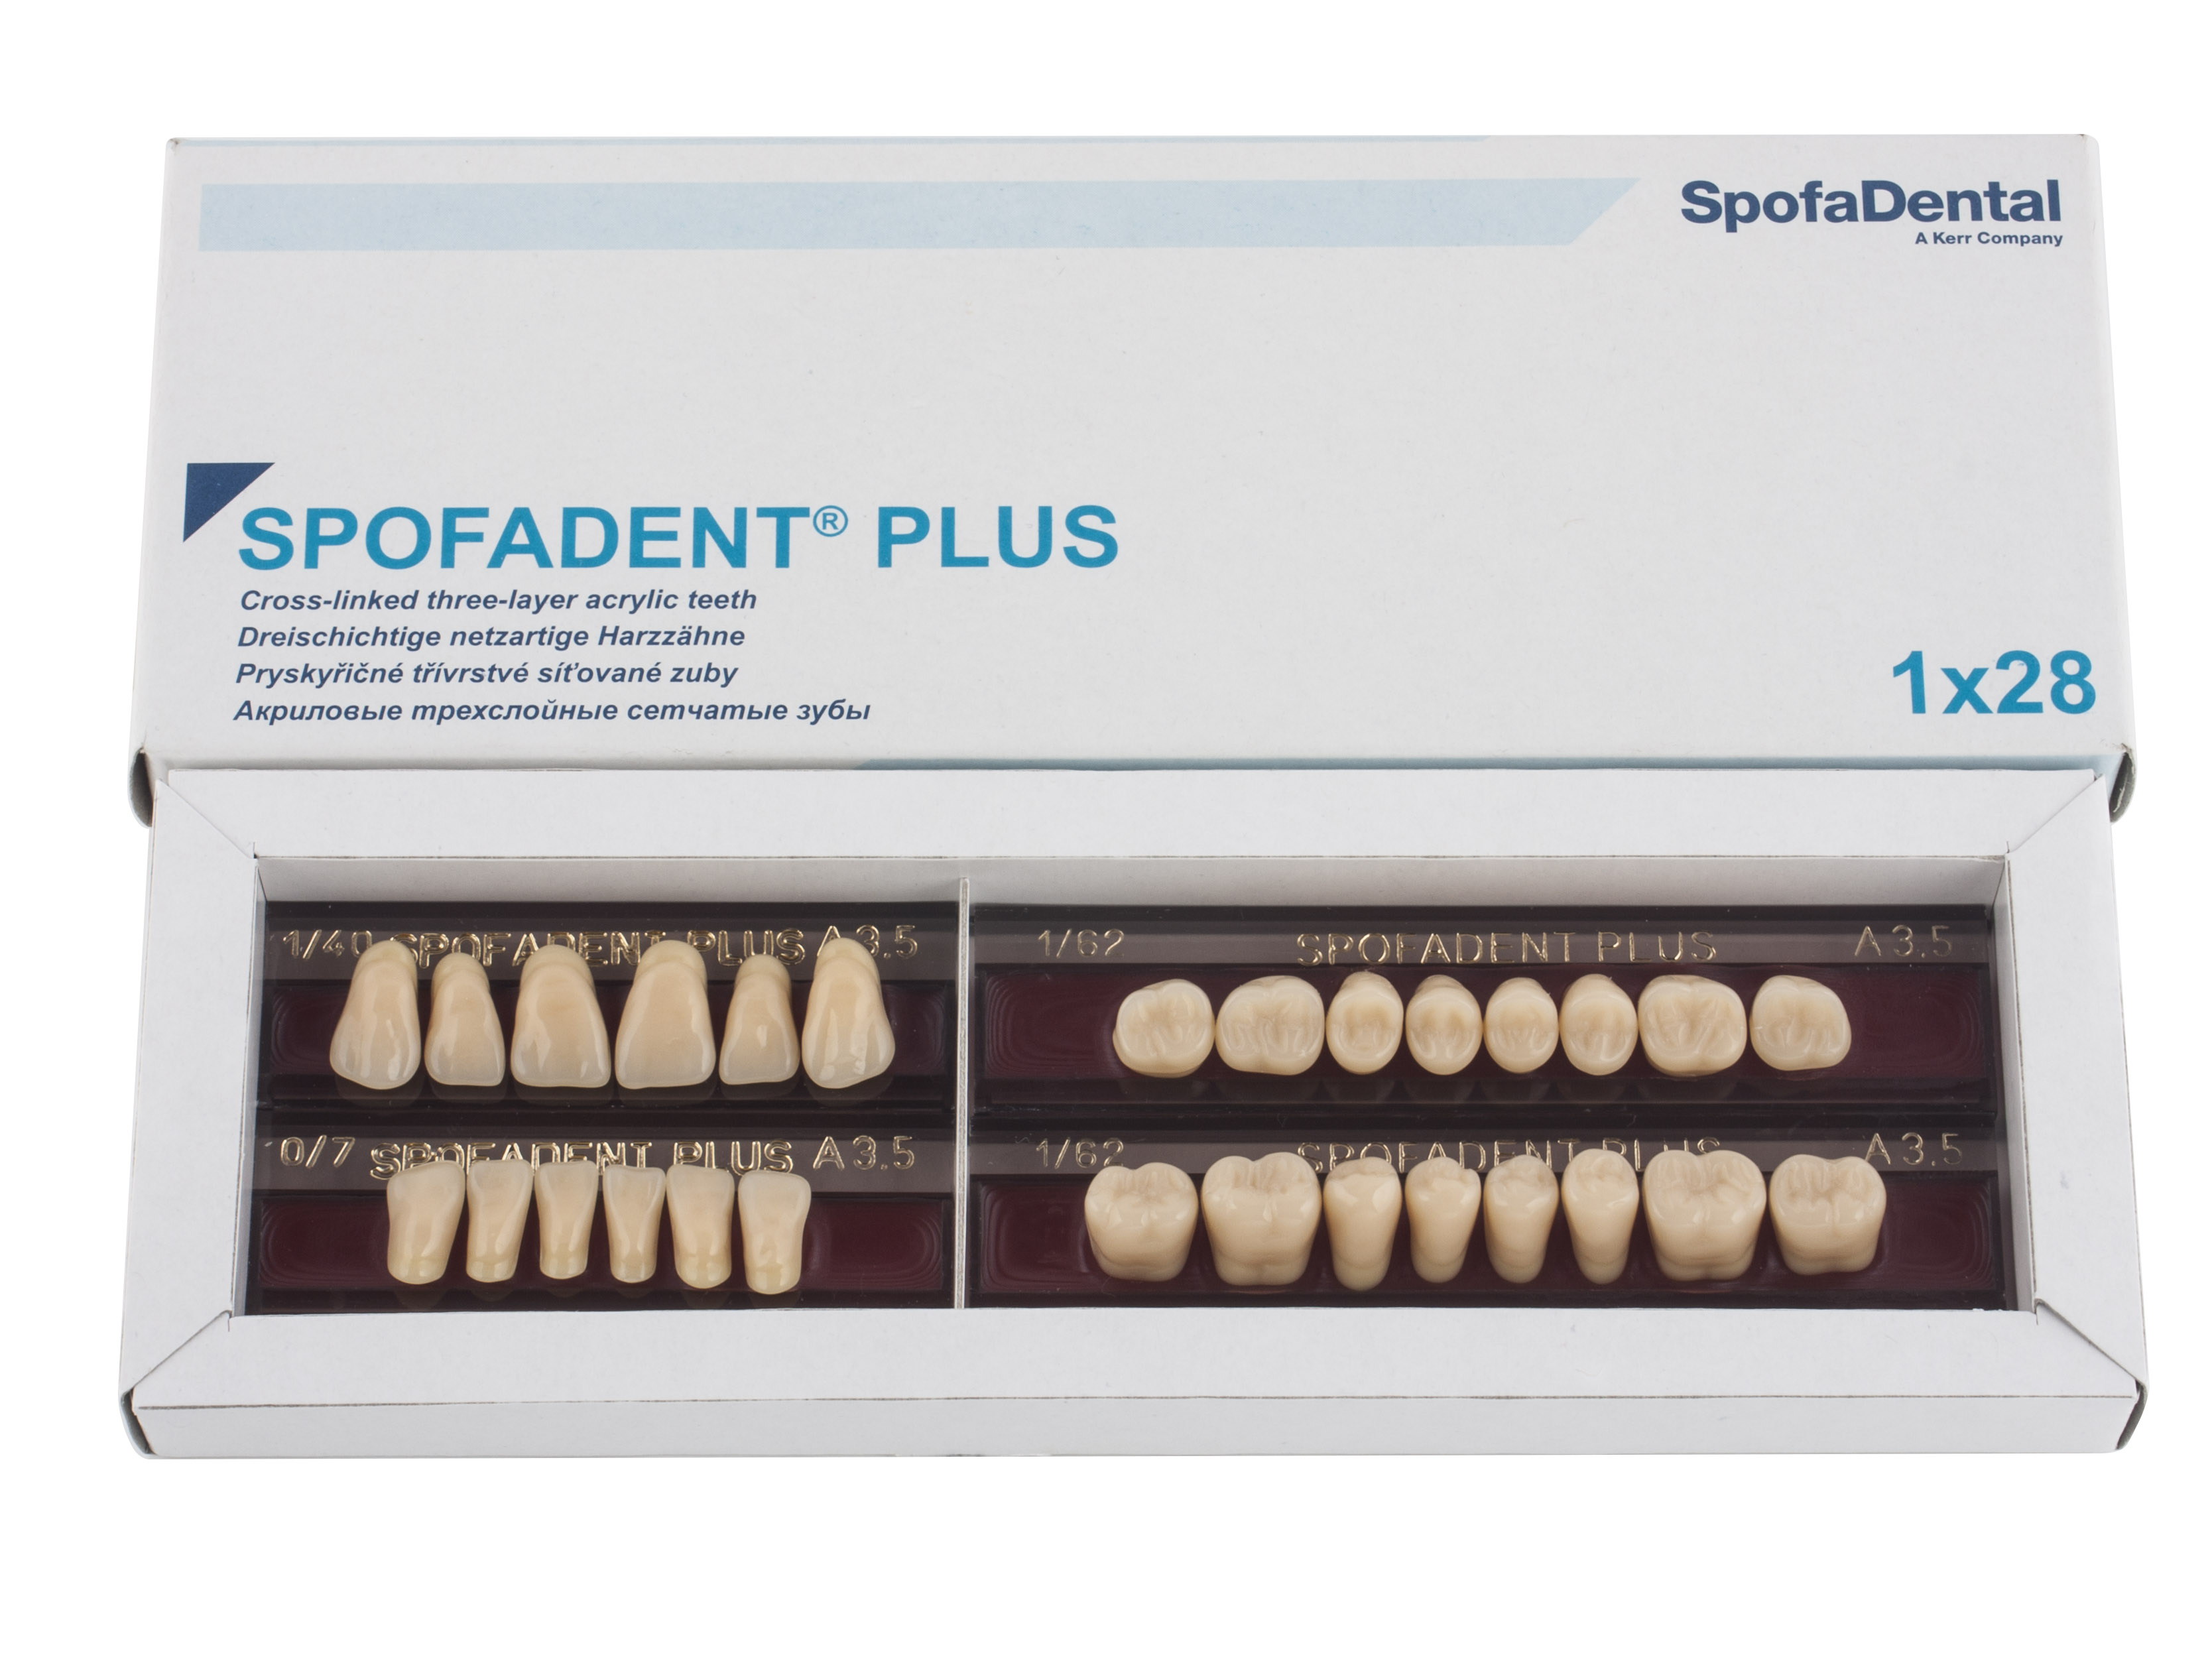 Spofadent Plus (А3,5) 1/40-0/7-1/62